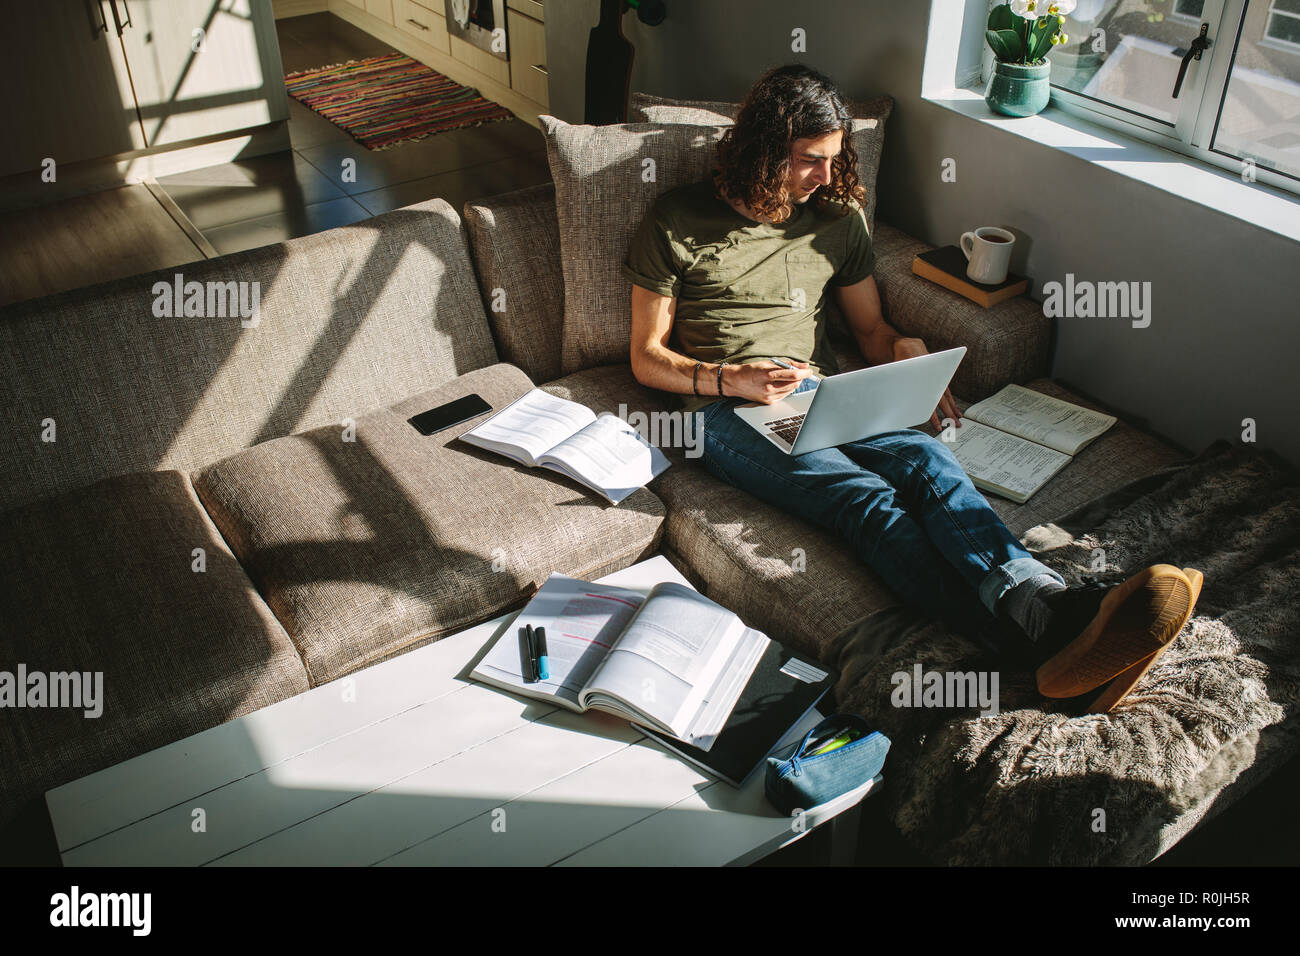 Studente studiando per gli esami seduto sul divano con la luce del sole proveniente dalla finestra. Studente di disco sul computer portatile e libri. Foto Stock